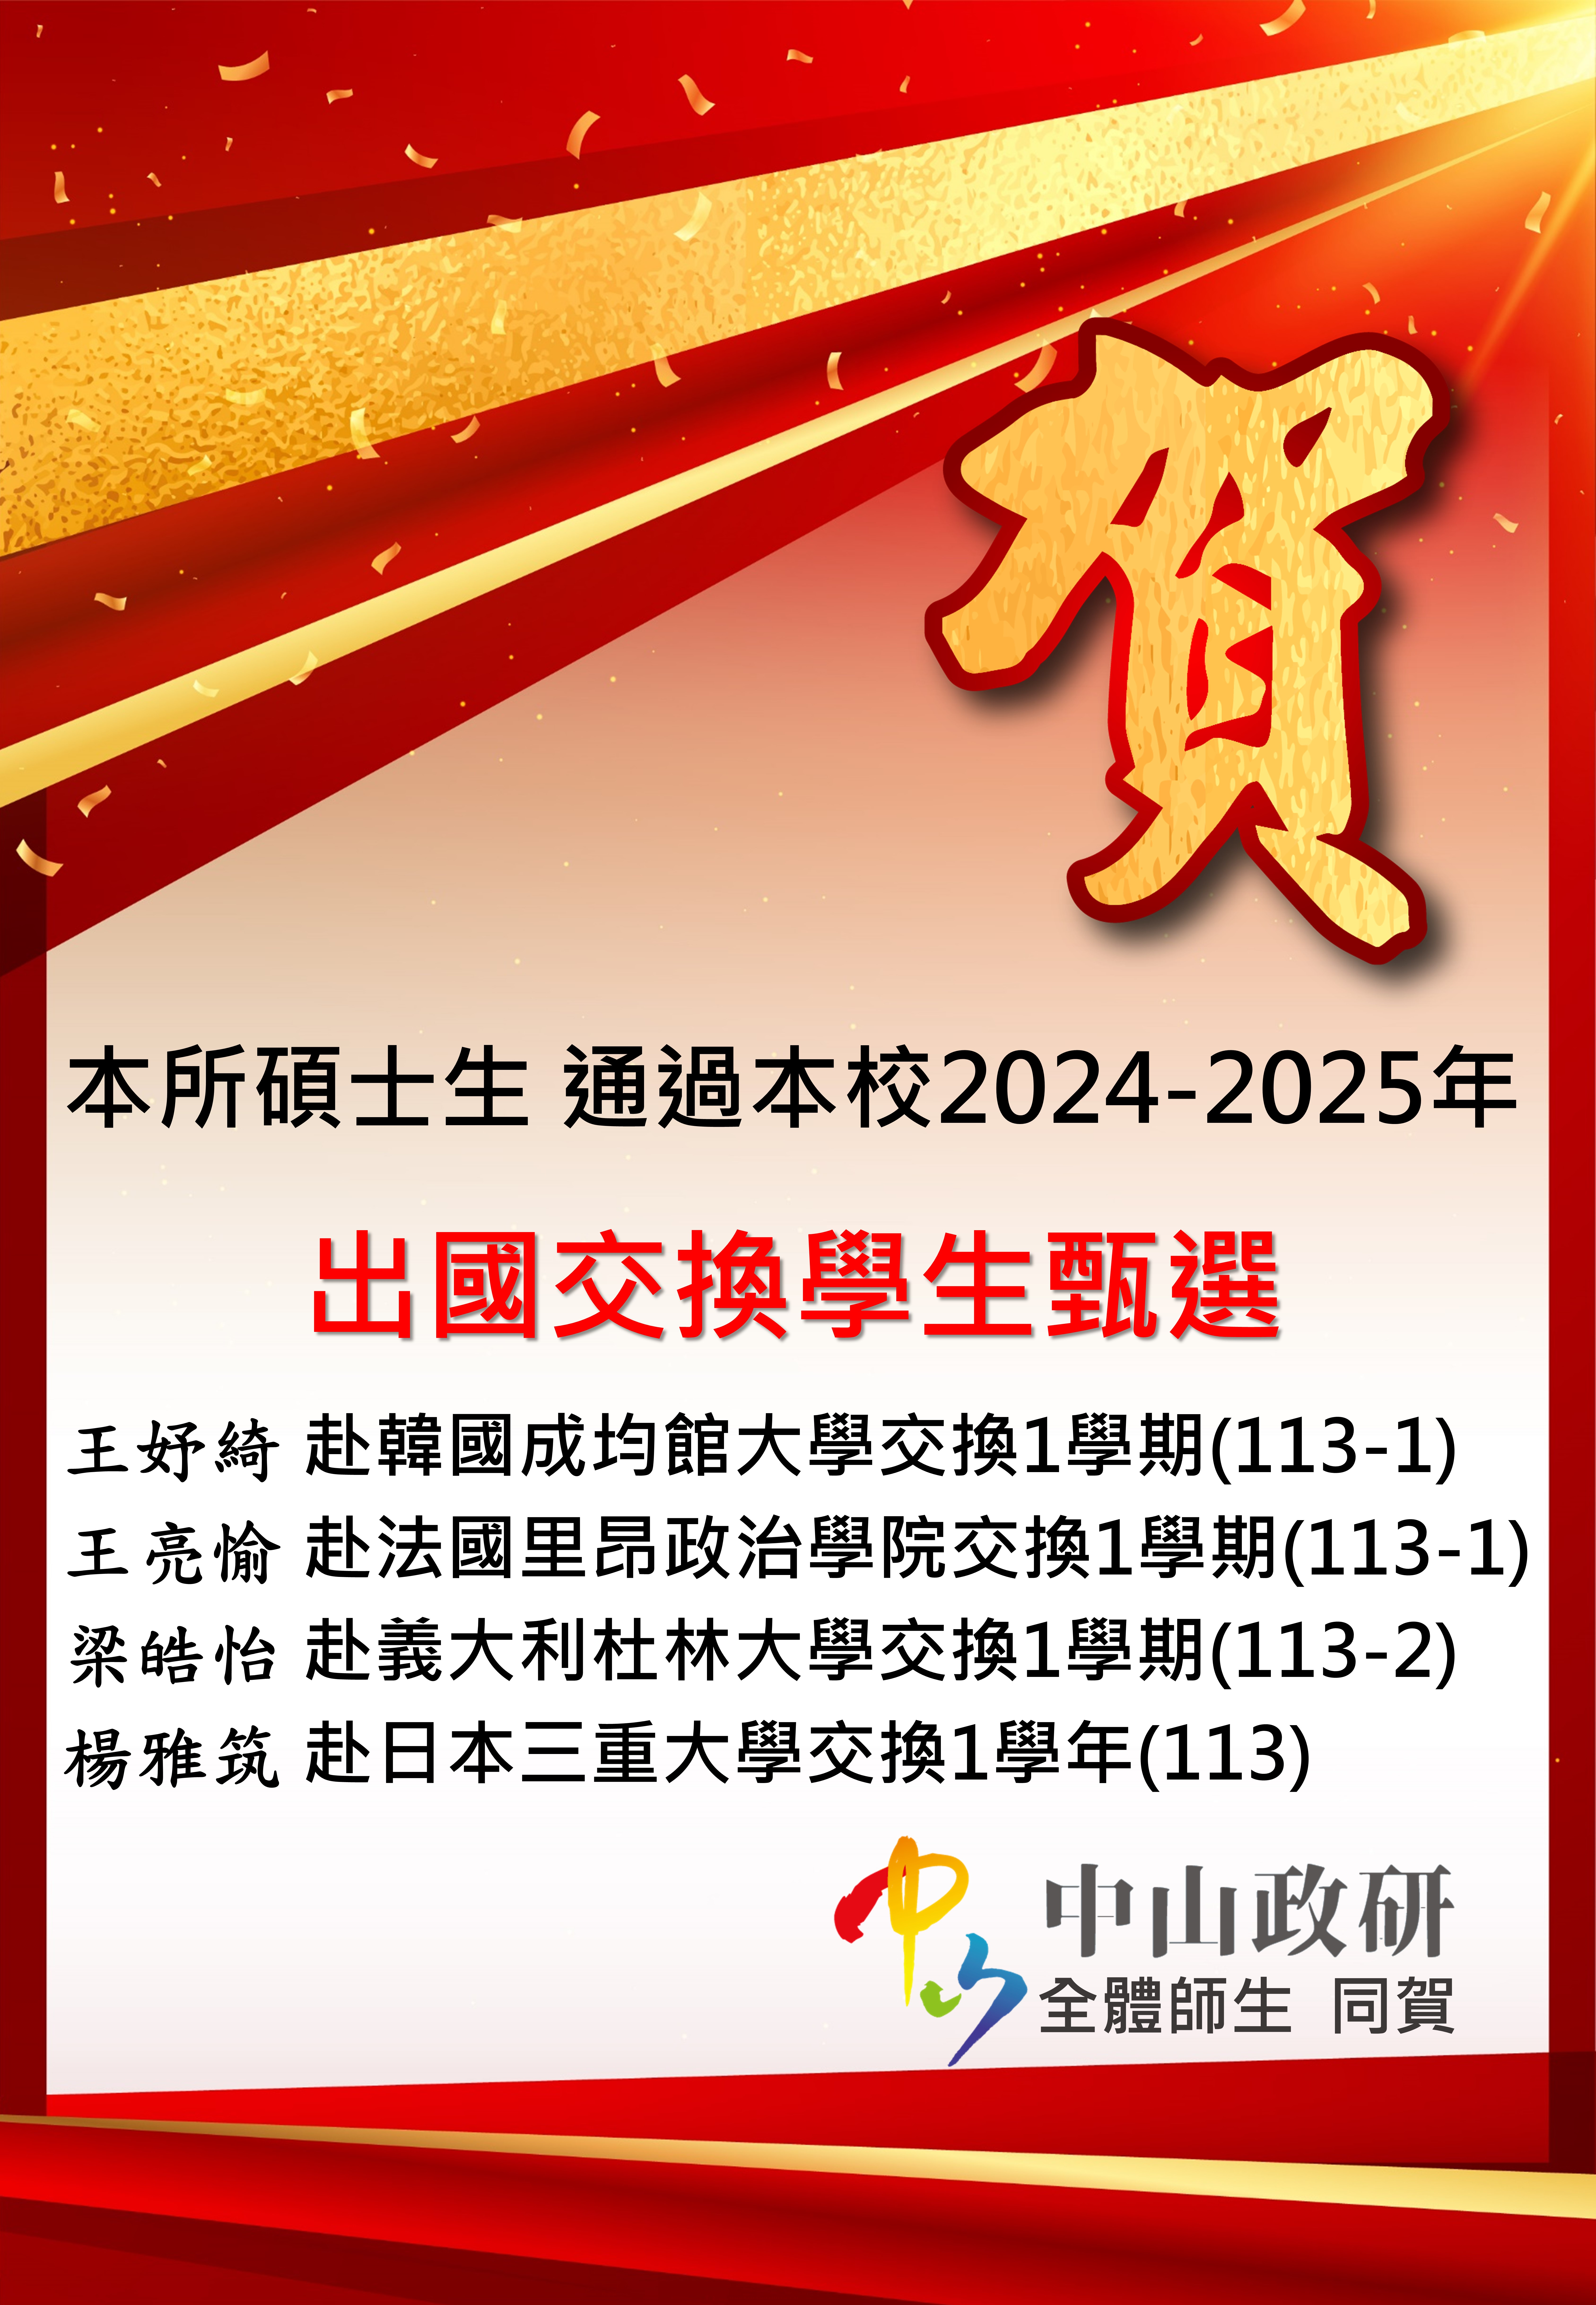 2024-2025 政治所碩士班學生出國交換甄選錄取名單